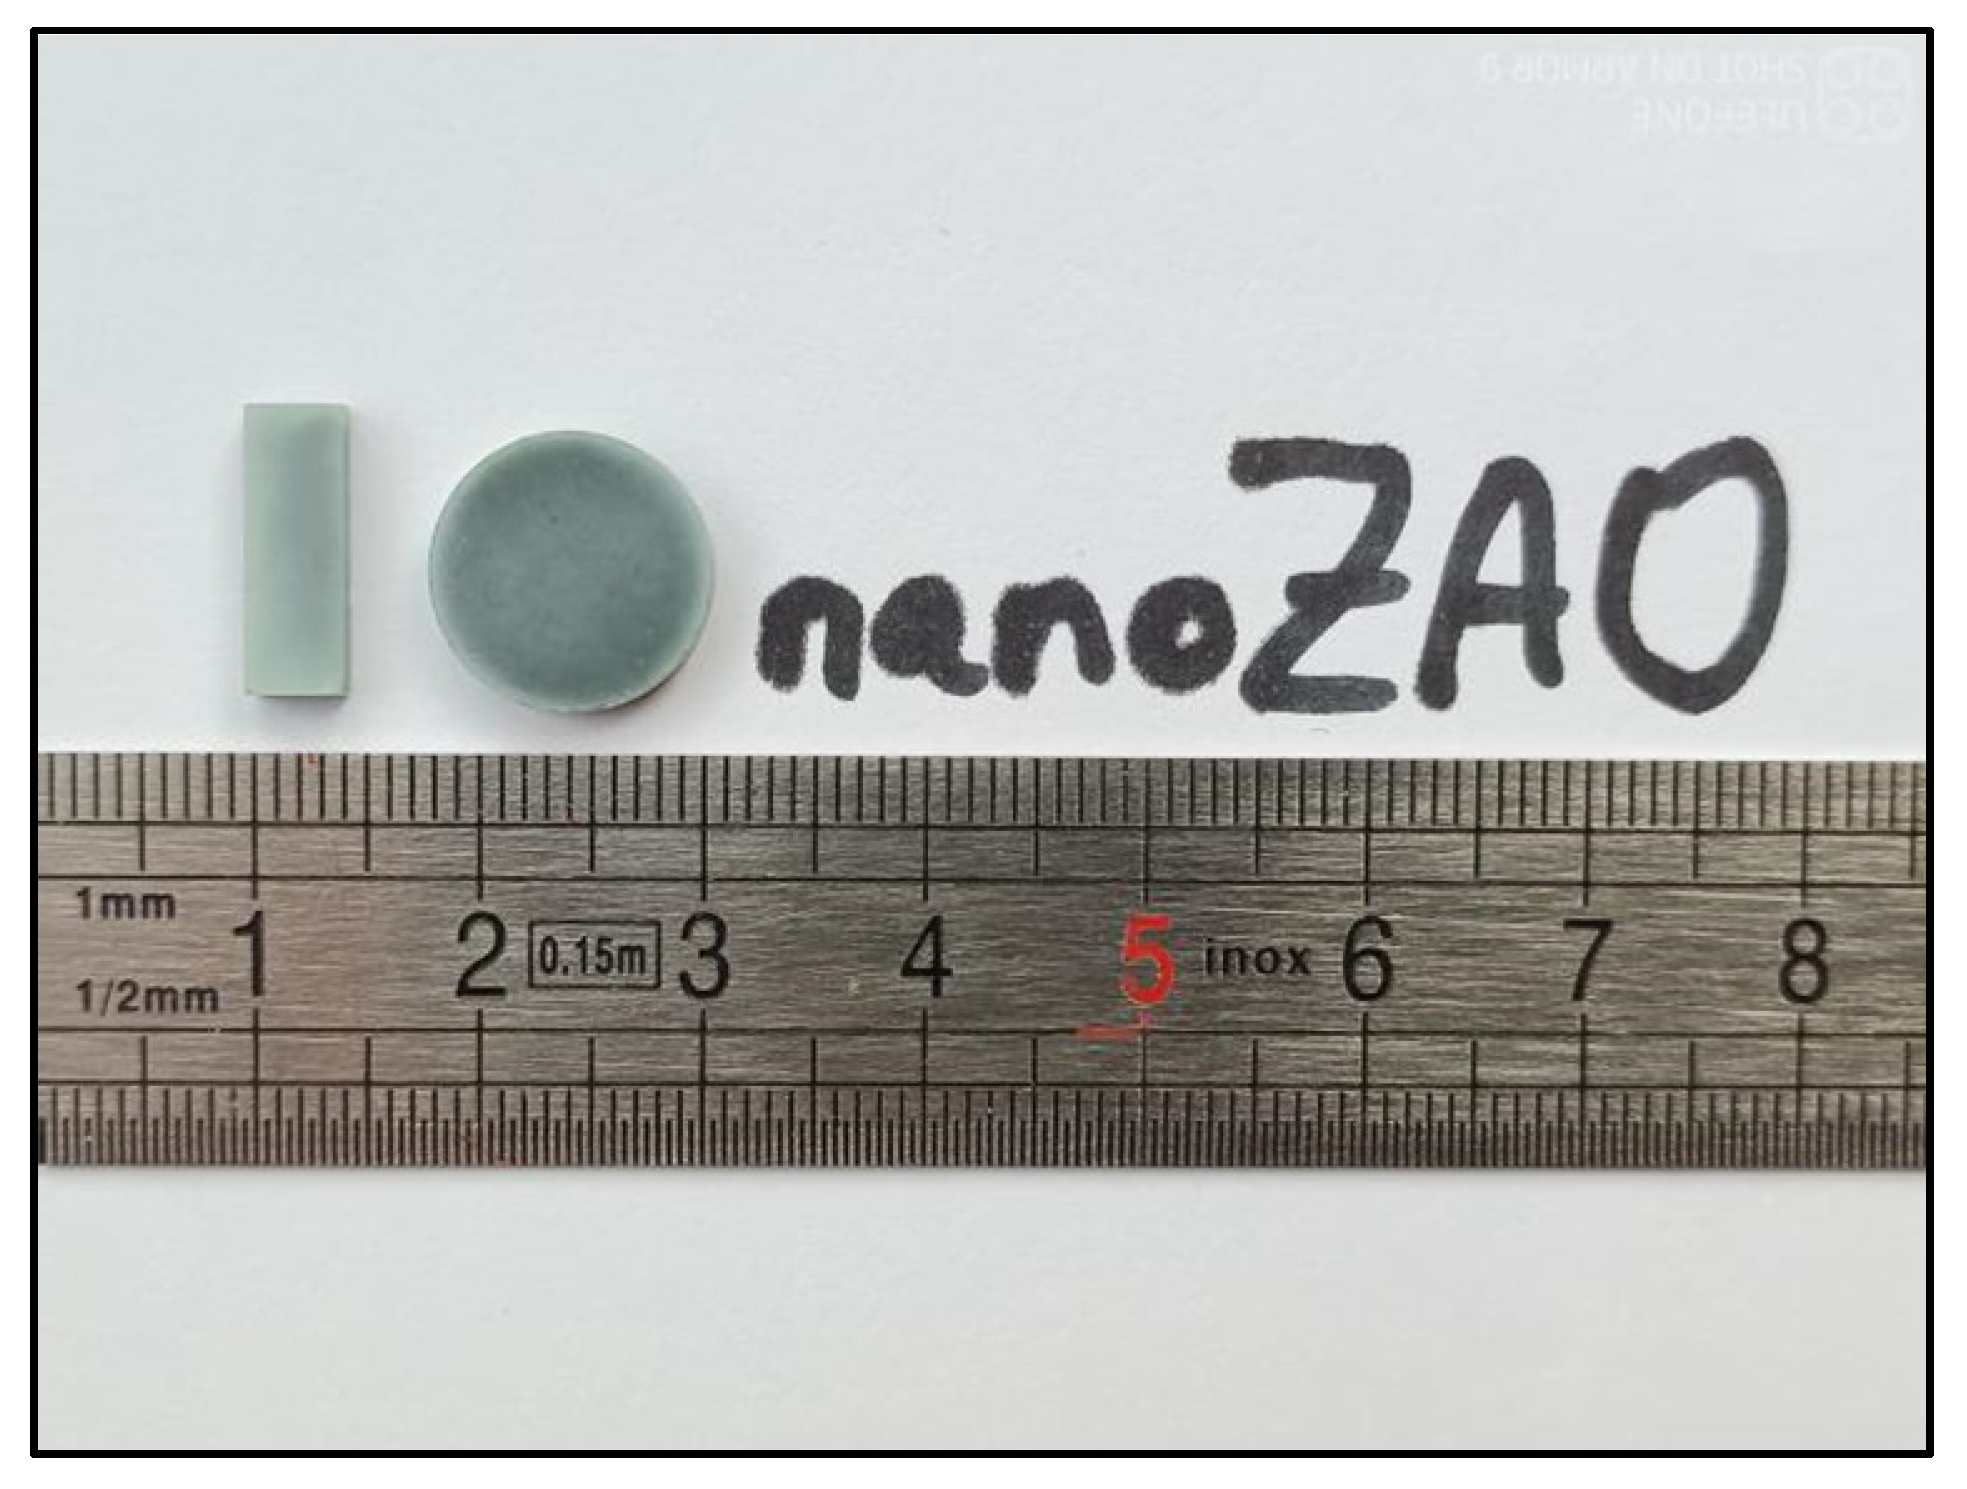 100 mm Radiopaque Ruler - NIST Certified